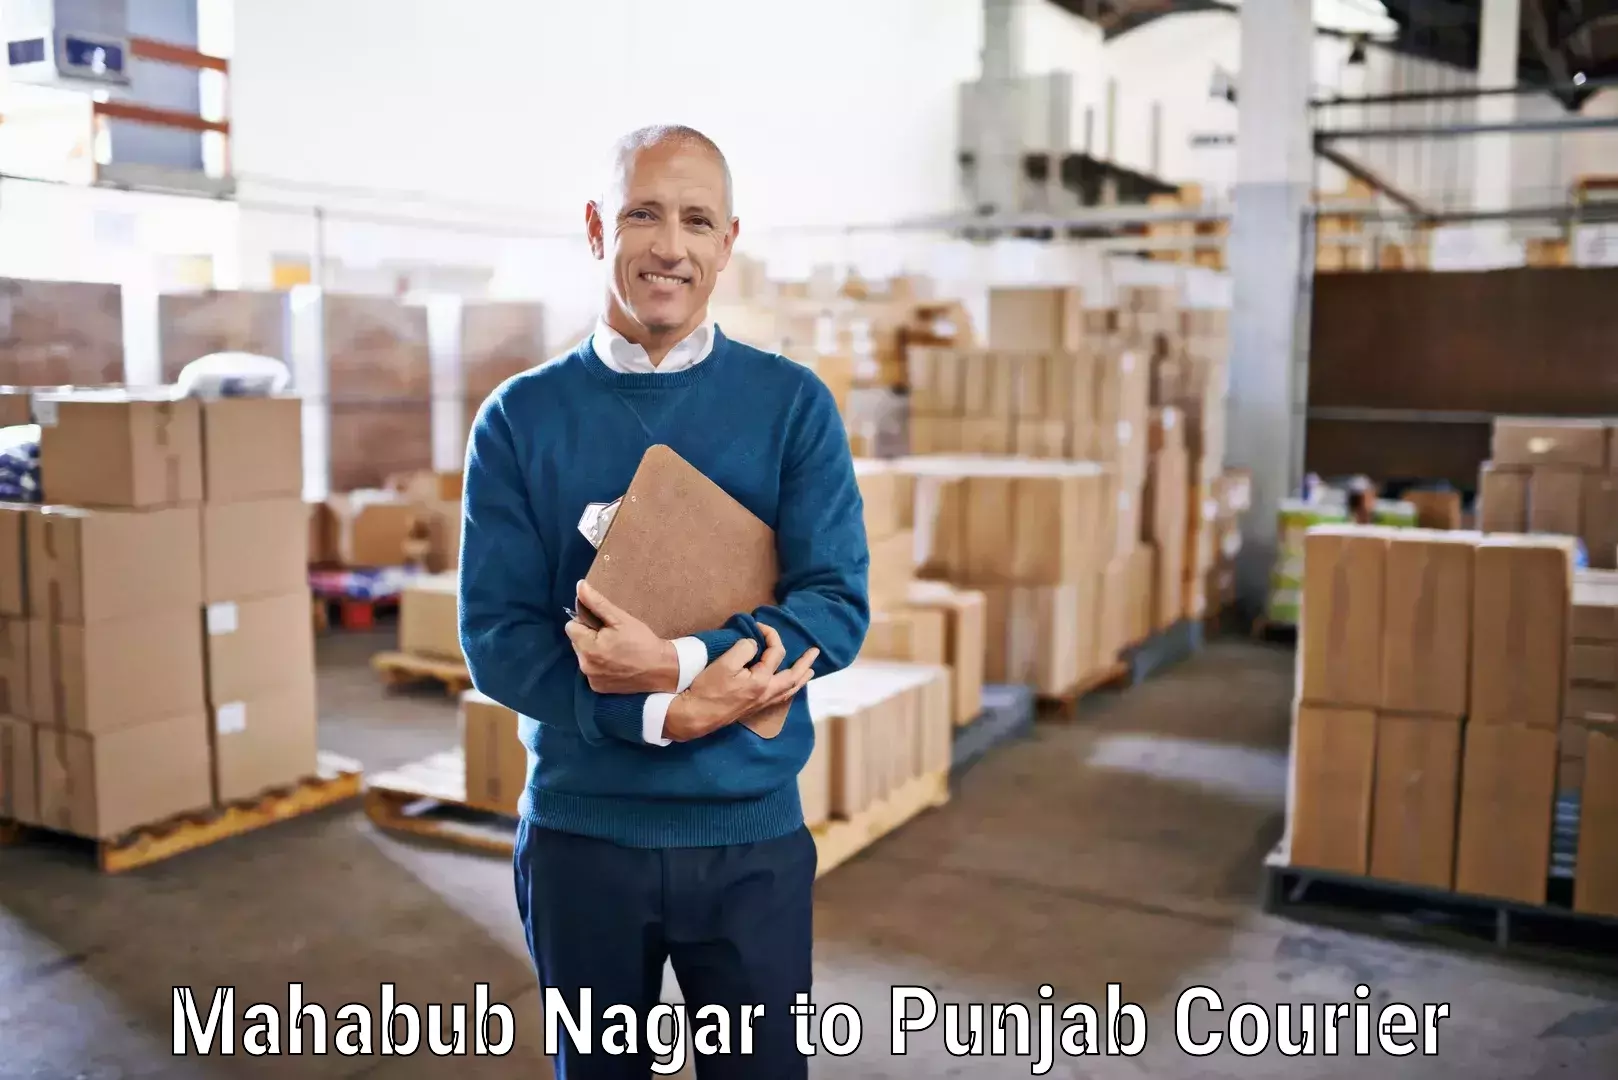 Reliable courier service Mahabub Nagar to Jhunir